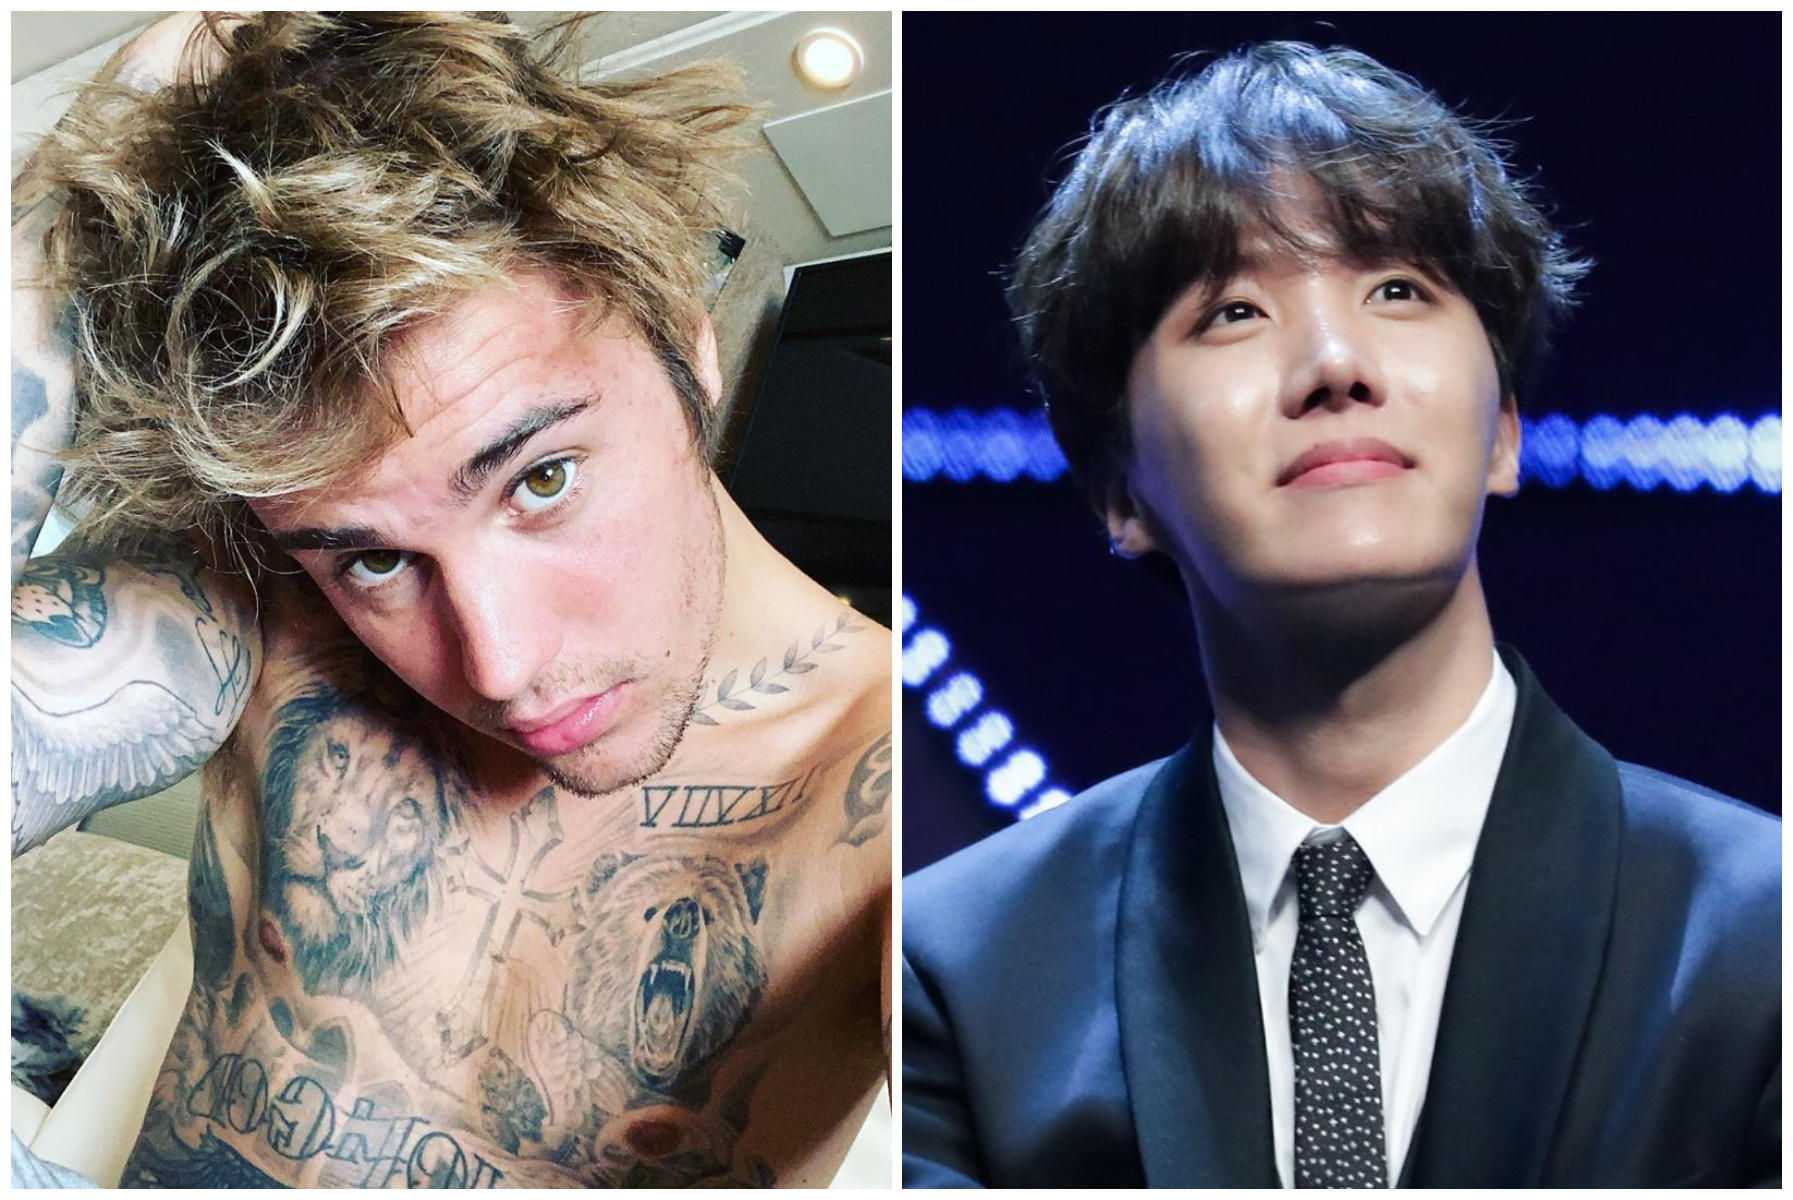 Nebănuite sunt căile muzicii! Ce legătură există între Justin Bieber și J-Hope de la BTS?